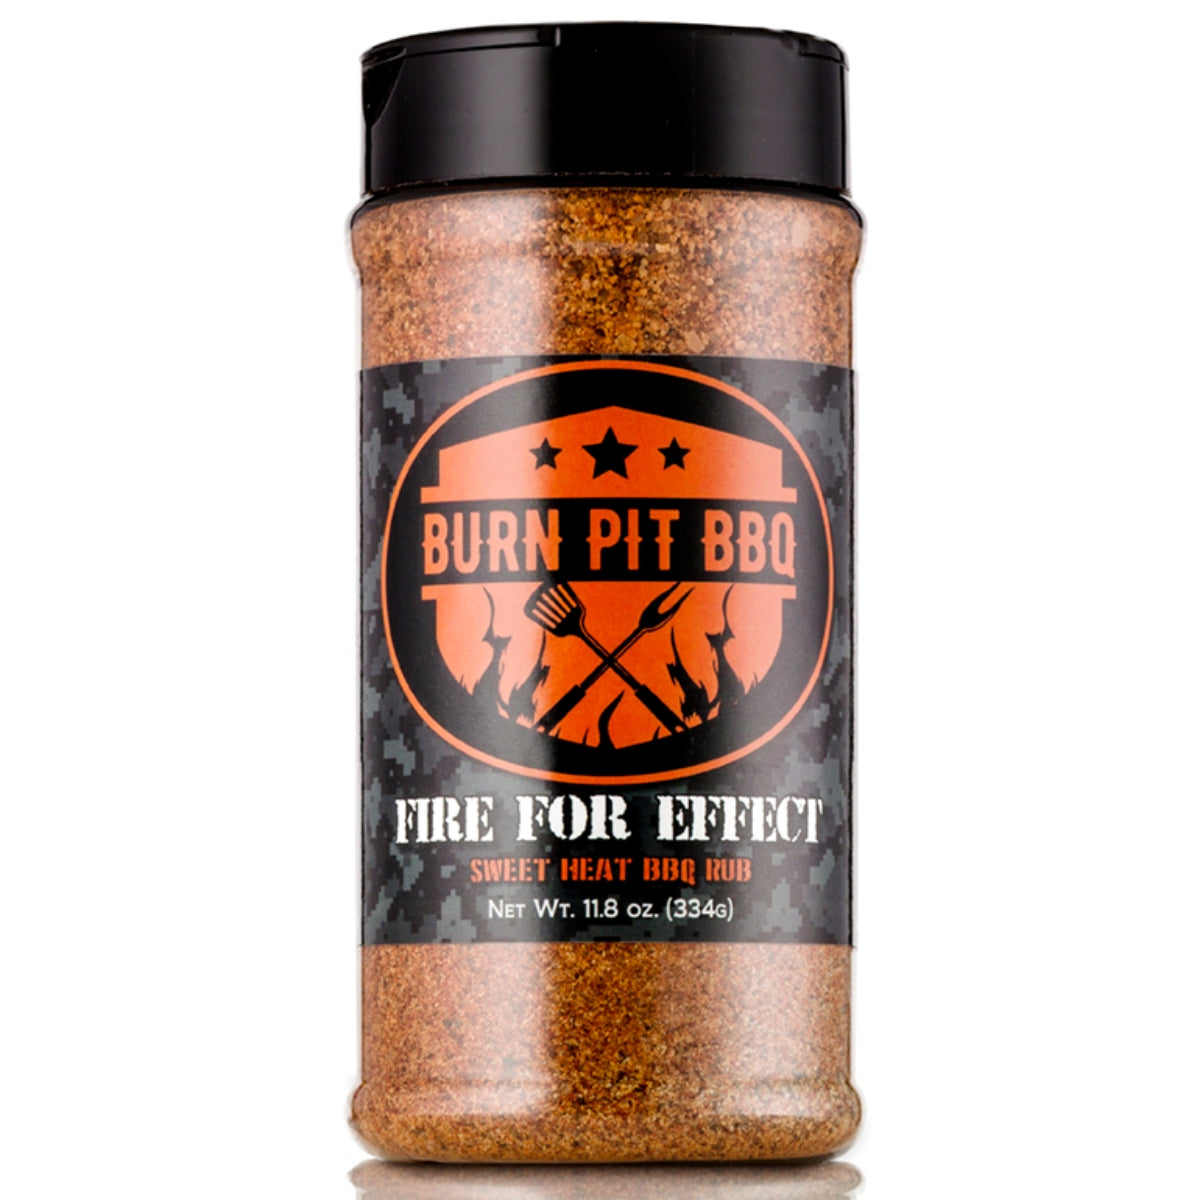 Heath Riles BBQ Sweet Rub, 16oz – The Burn Shop